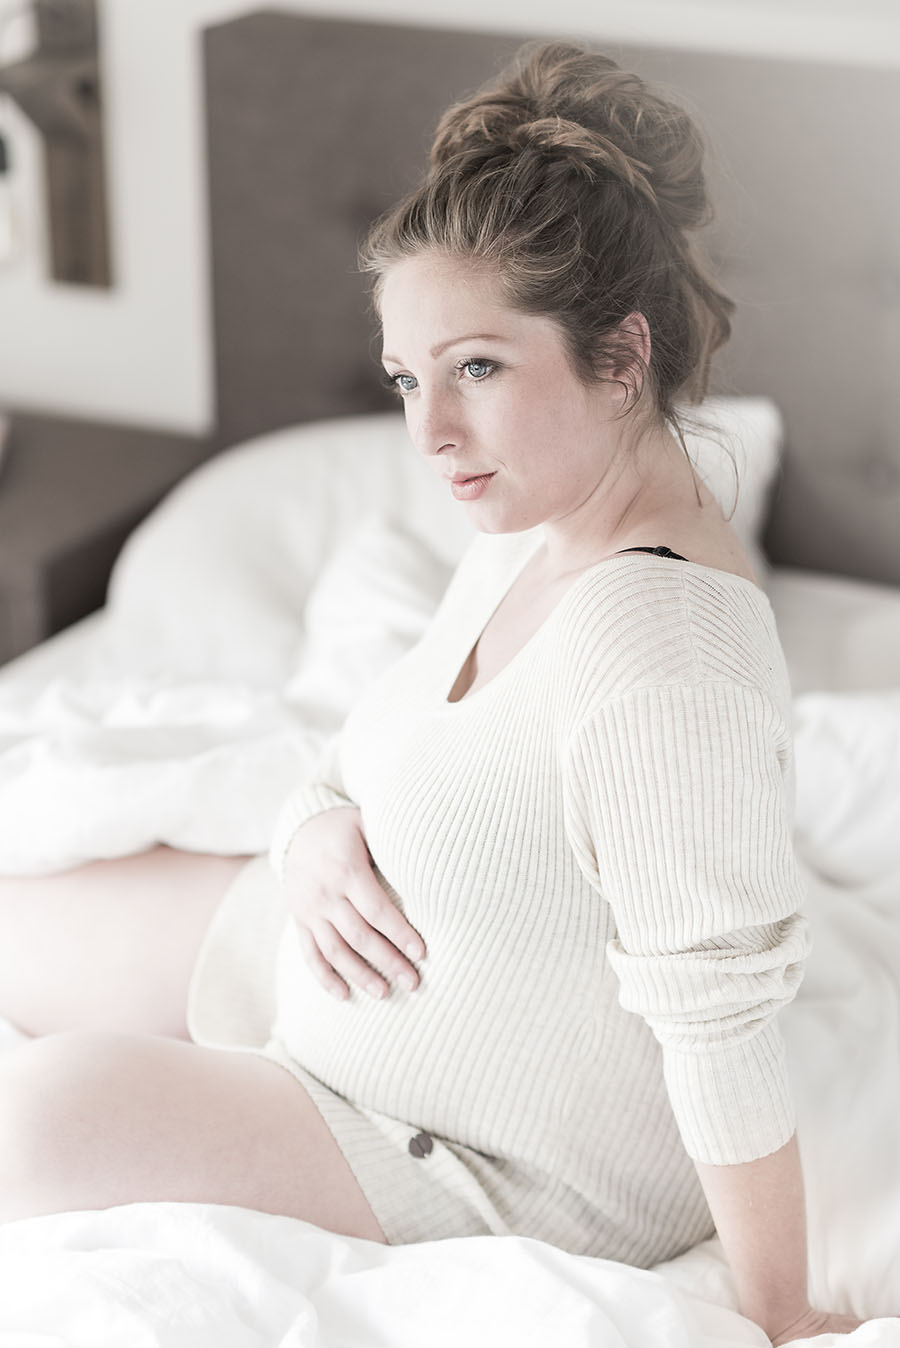 Dating zwangerschap scan het schrijven van een goed persoonlijk profiel voor dating